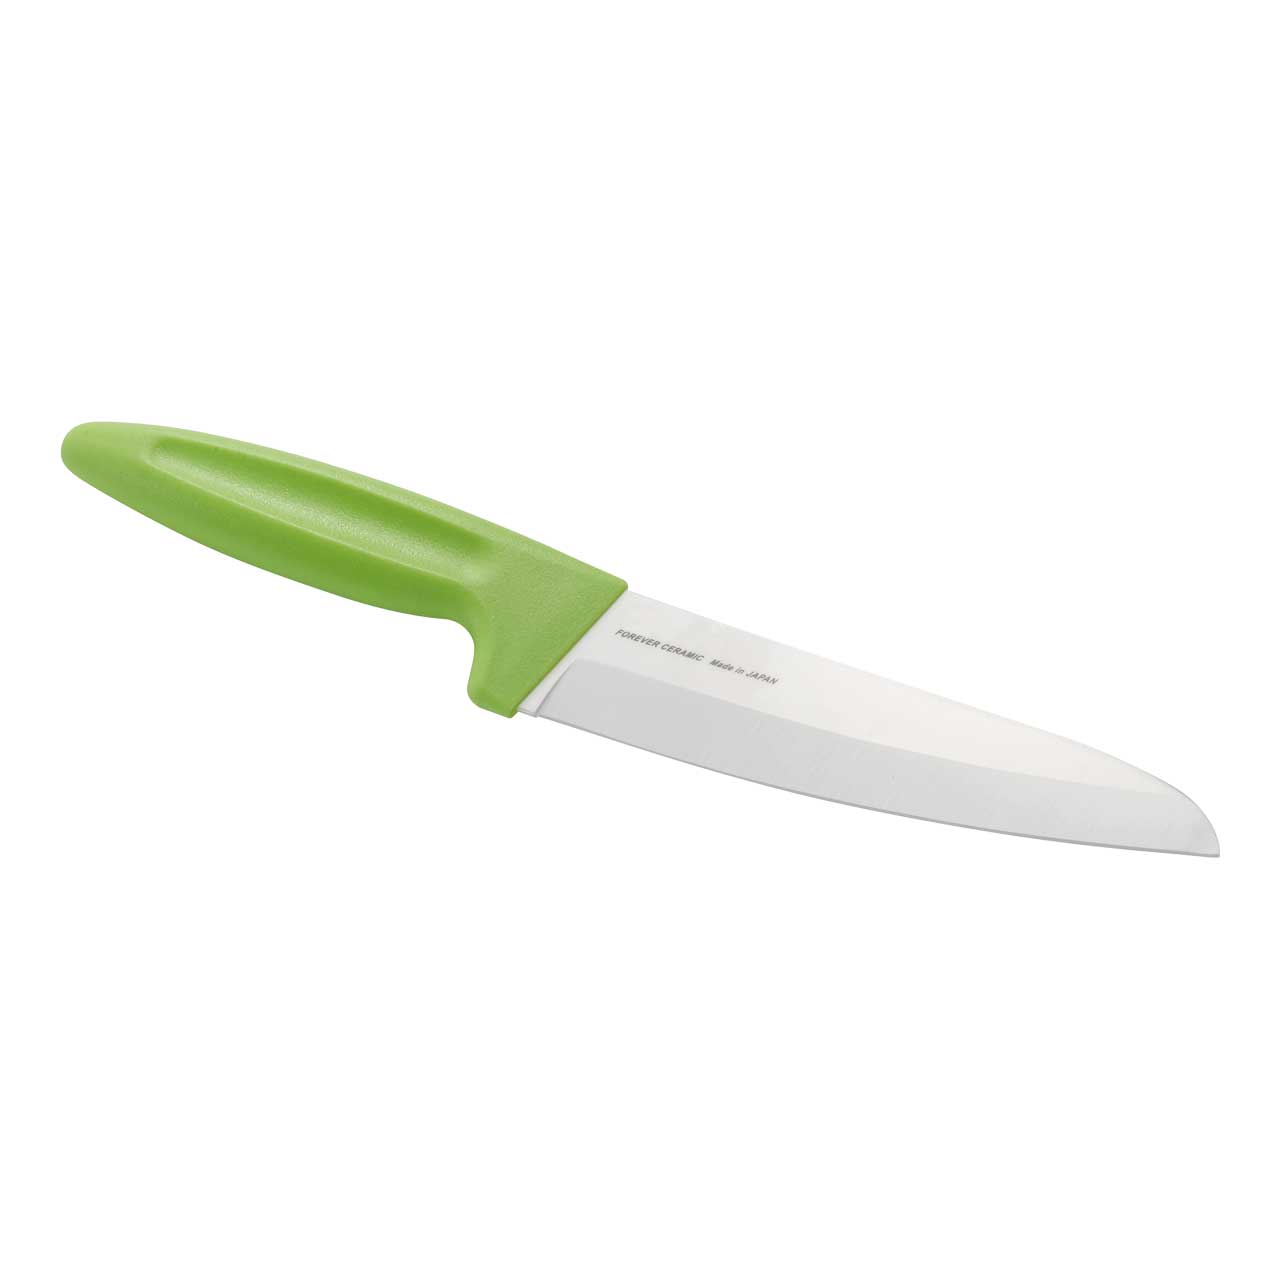 FOREVER Küchenmesser, weiße Keramikklinge, 16 cm, apfelgrüner Kunststoff-Griff,